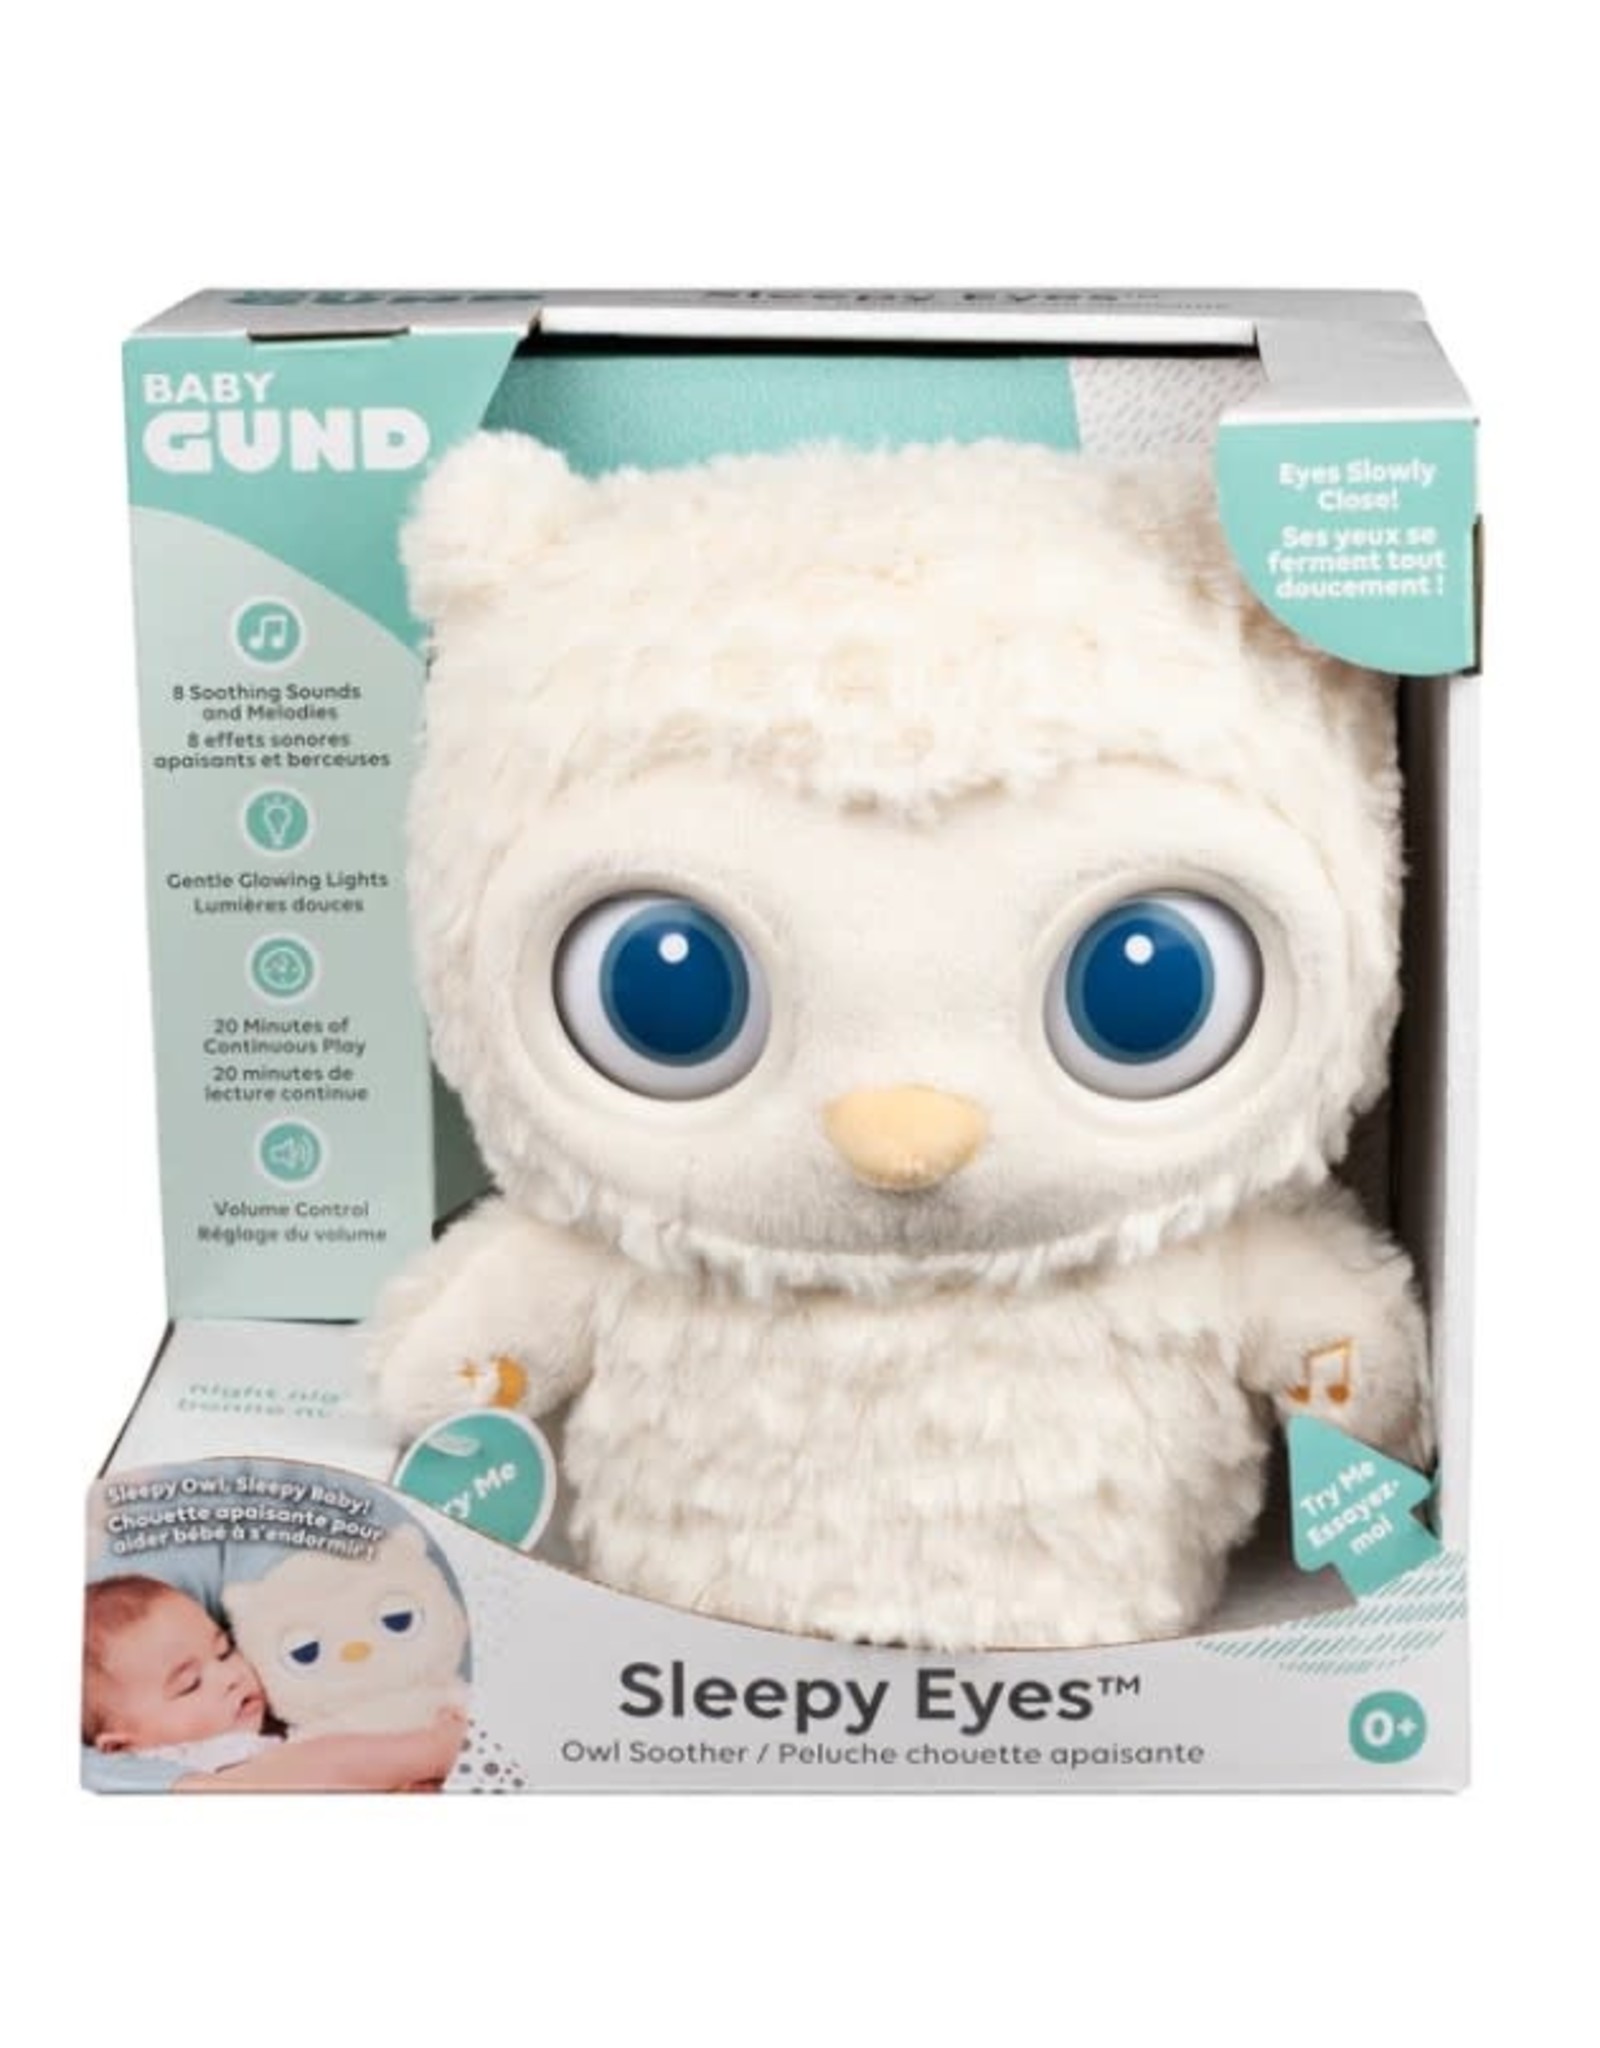 8" Sleepy Eyes Owl Soother Animated Plush